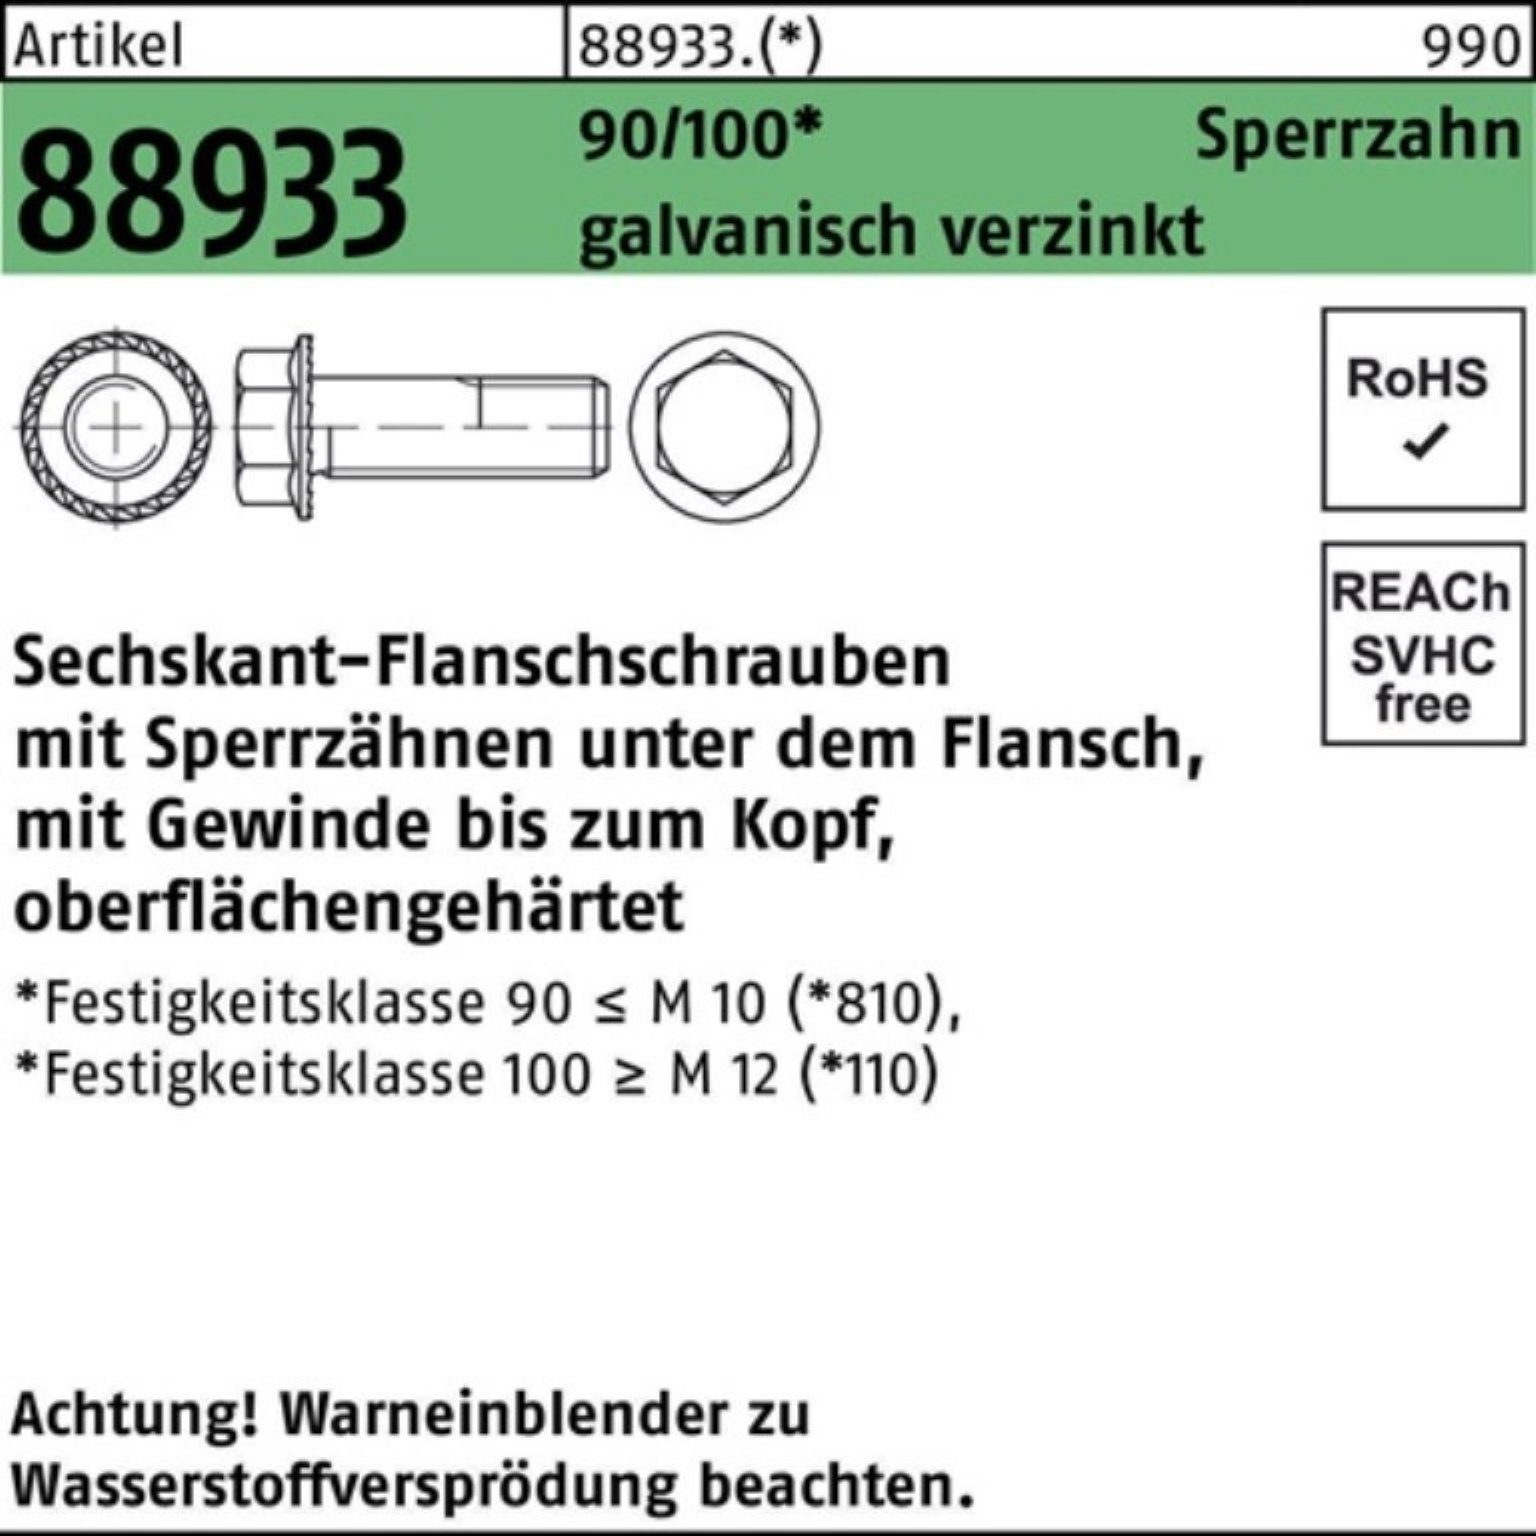 Pack VG R 200er M10x16 Reyher Sechskantflanschschraube 88933 g Sperrz. Schraube 90/100